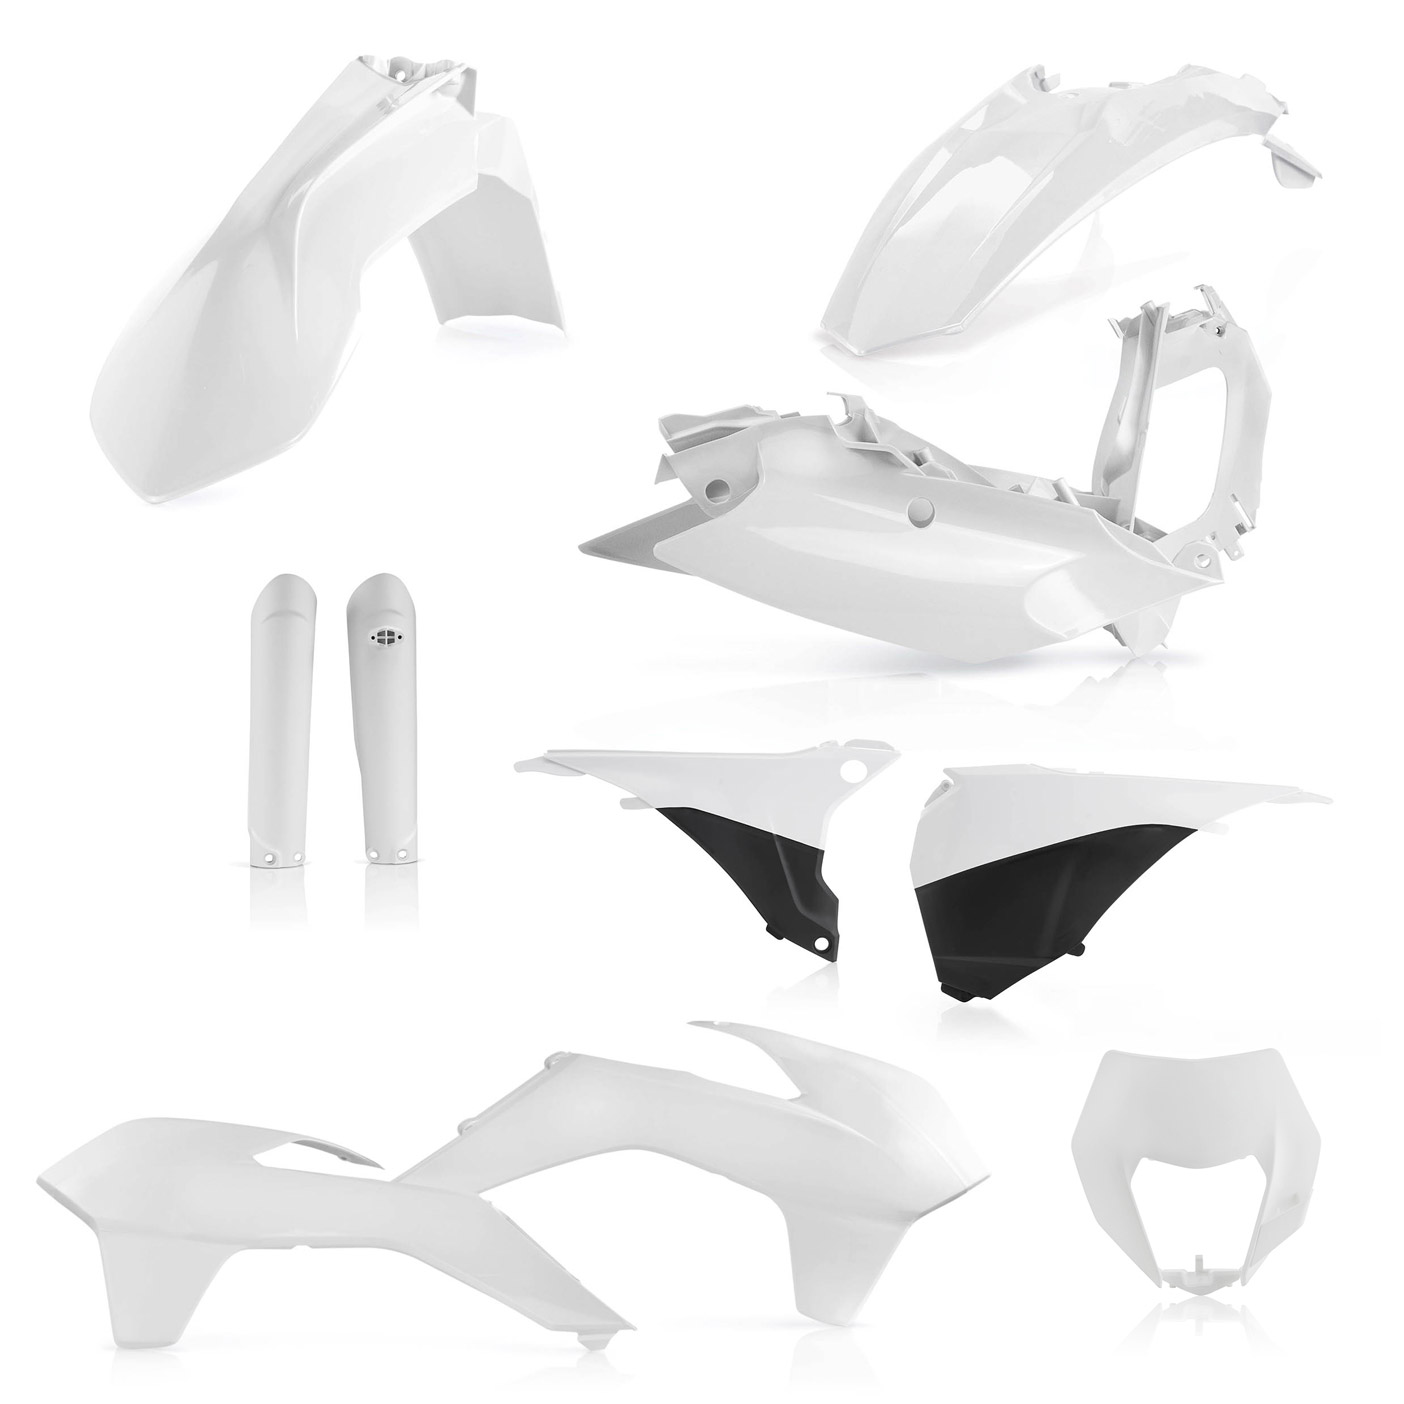 Plastikteile für deine KTM EXC und EXC-F in weiß, bestehend aus Frontkotflügel, Heckkotflügel, Tankspoiler, Gabelschoner, Nummerntafeln, Seitenteilen und Lampenmaske